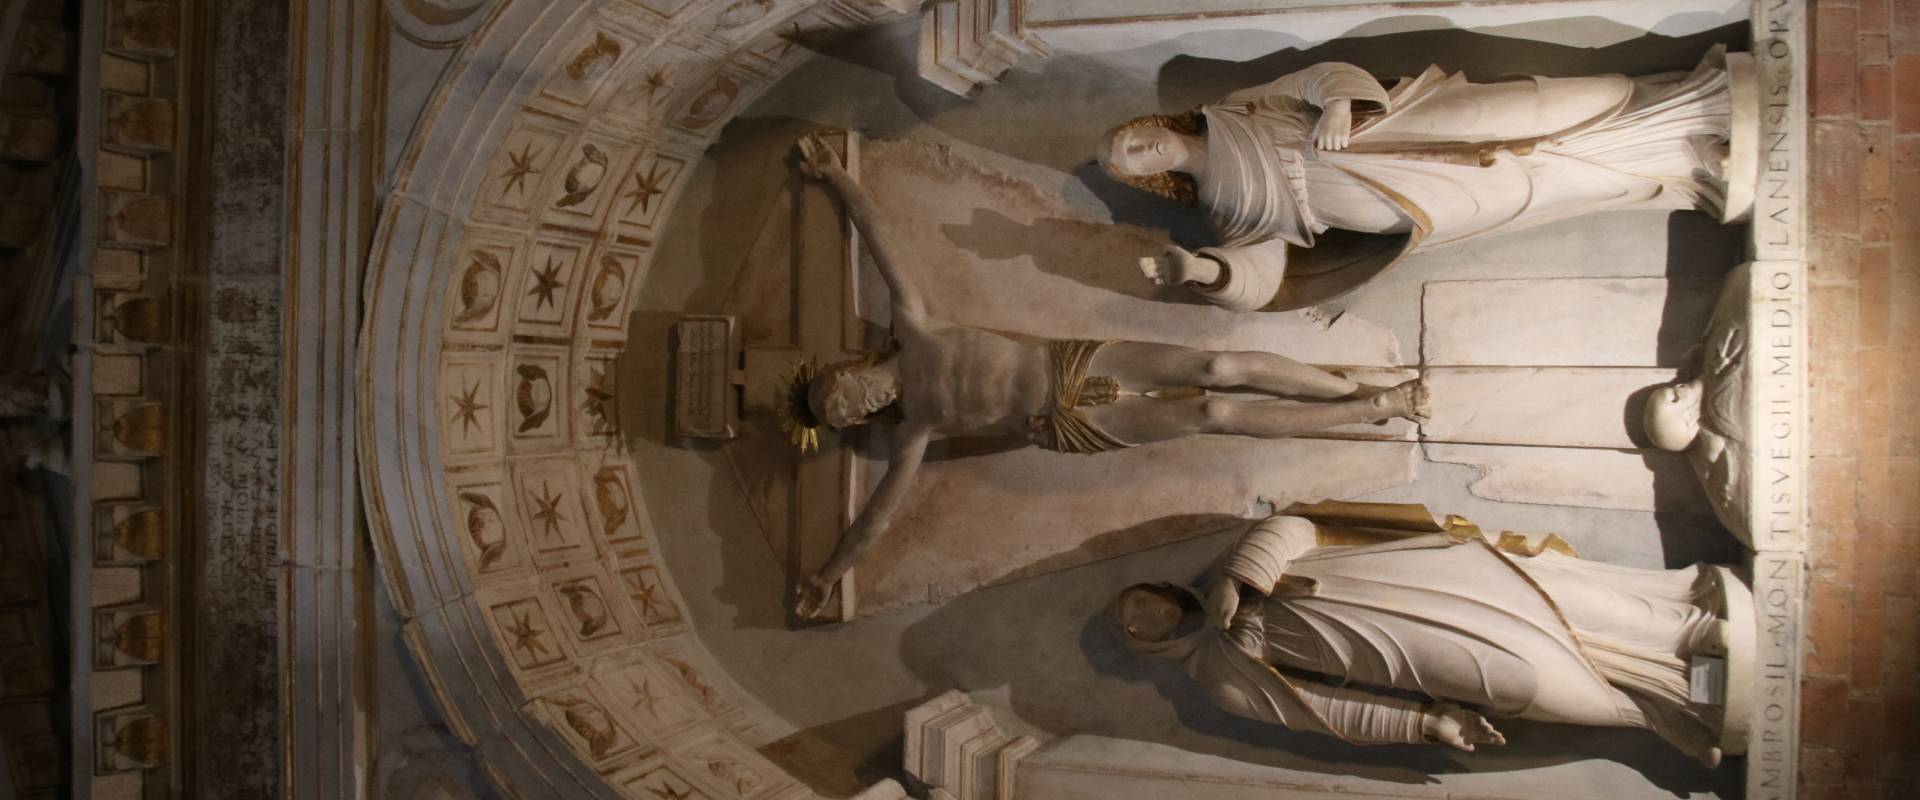 Duomo (Piacenza), Cristo crocifisso con i dolenti 02 photo by Mongolo1984